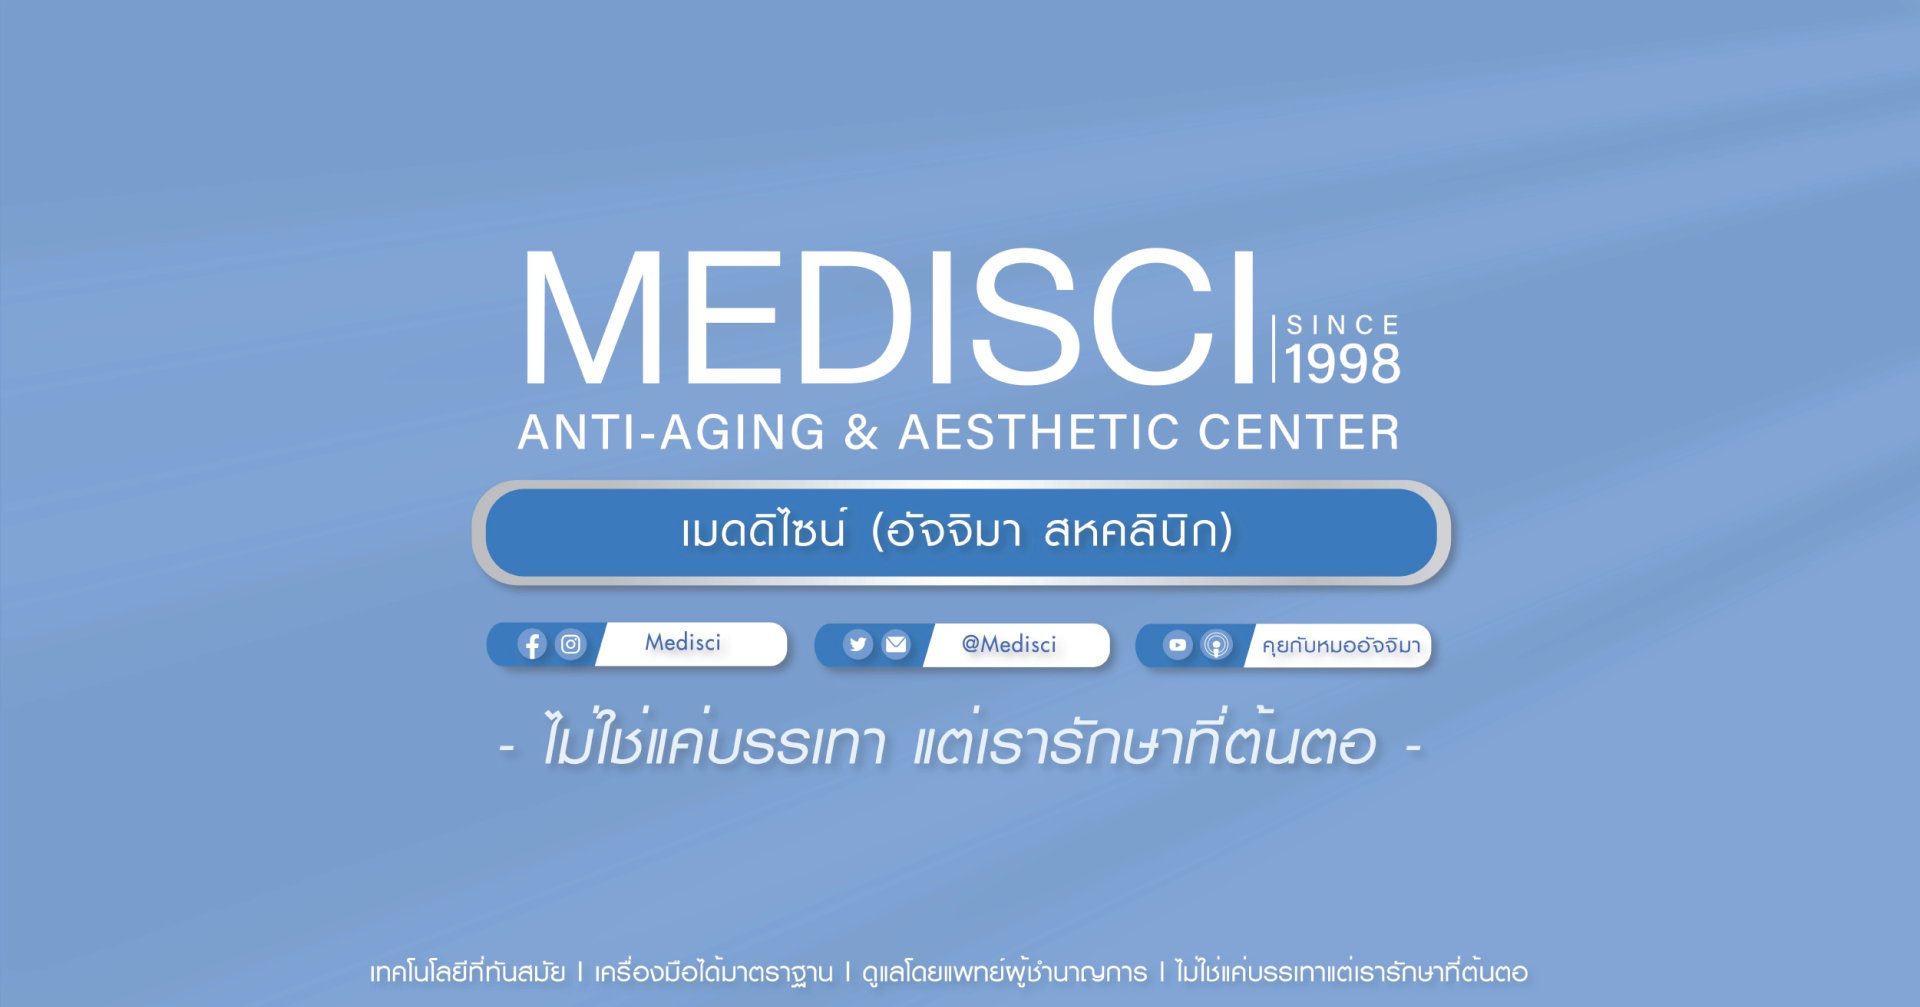 Contact Medisci